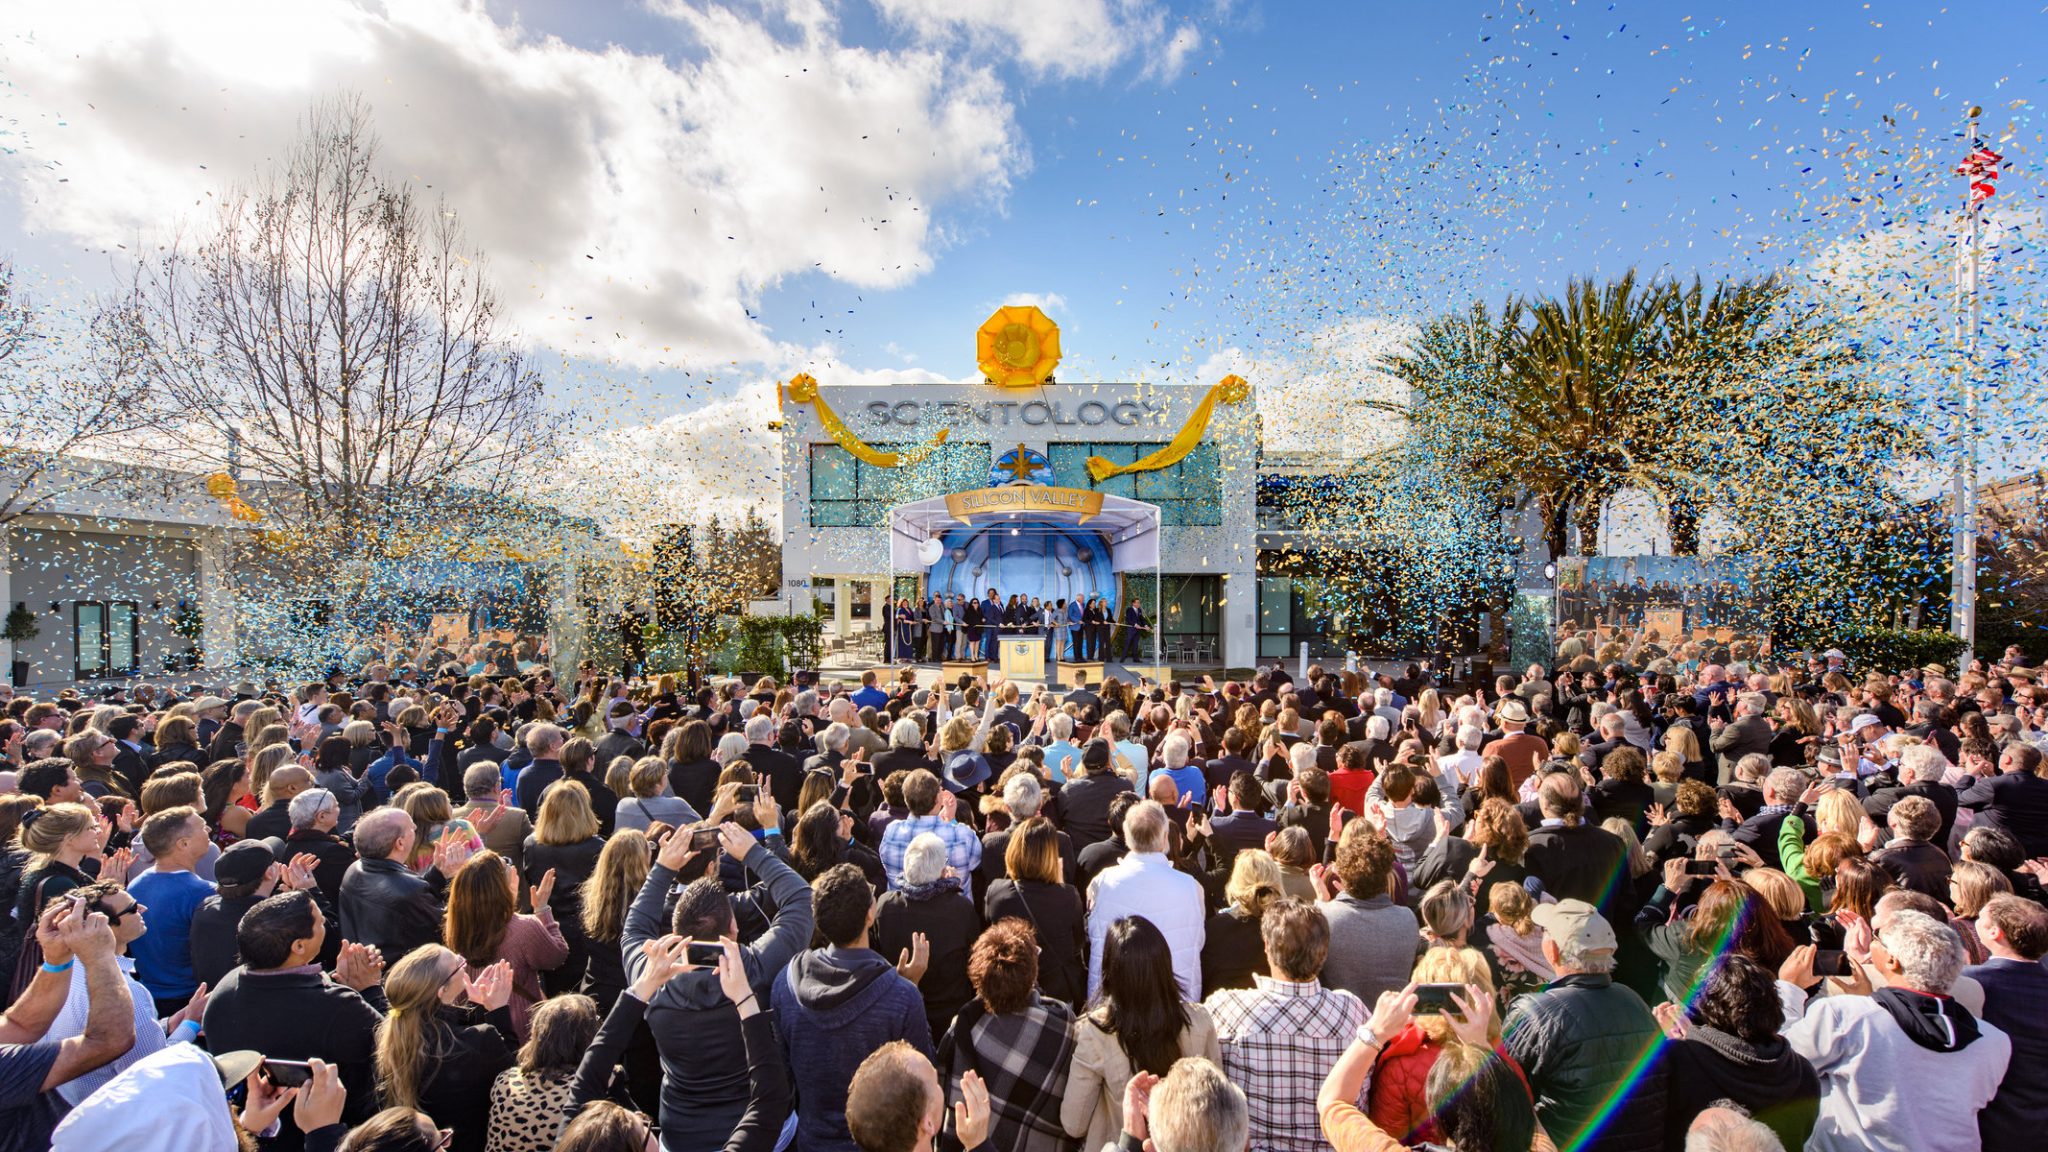 Lorsque la spiritualité croise le génie humain : une nouvelle Eglise de Scientologie ouvre dans la Silicon Valley